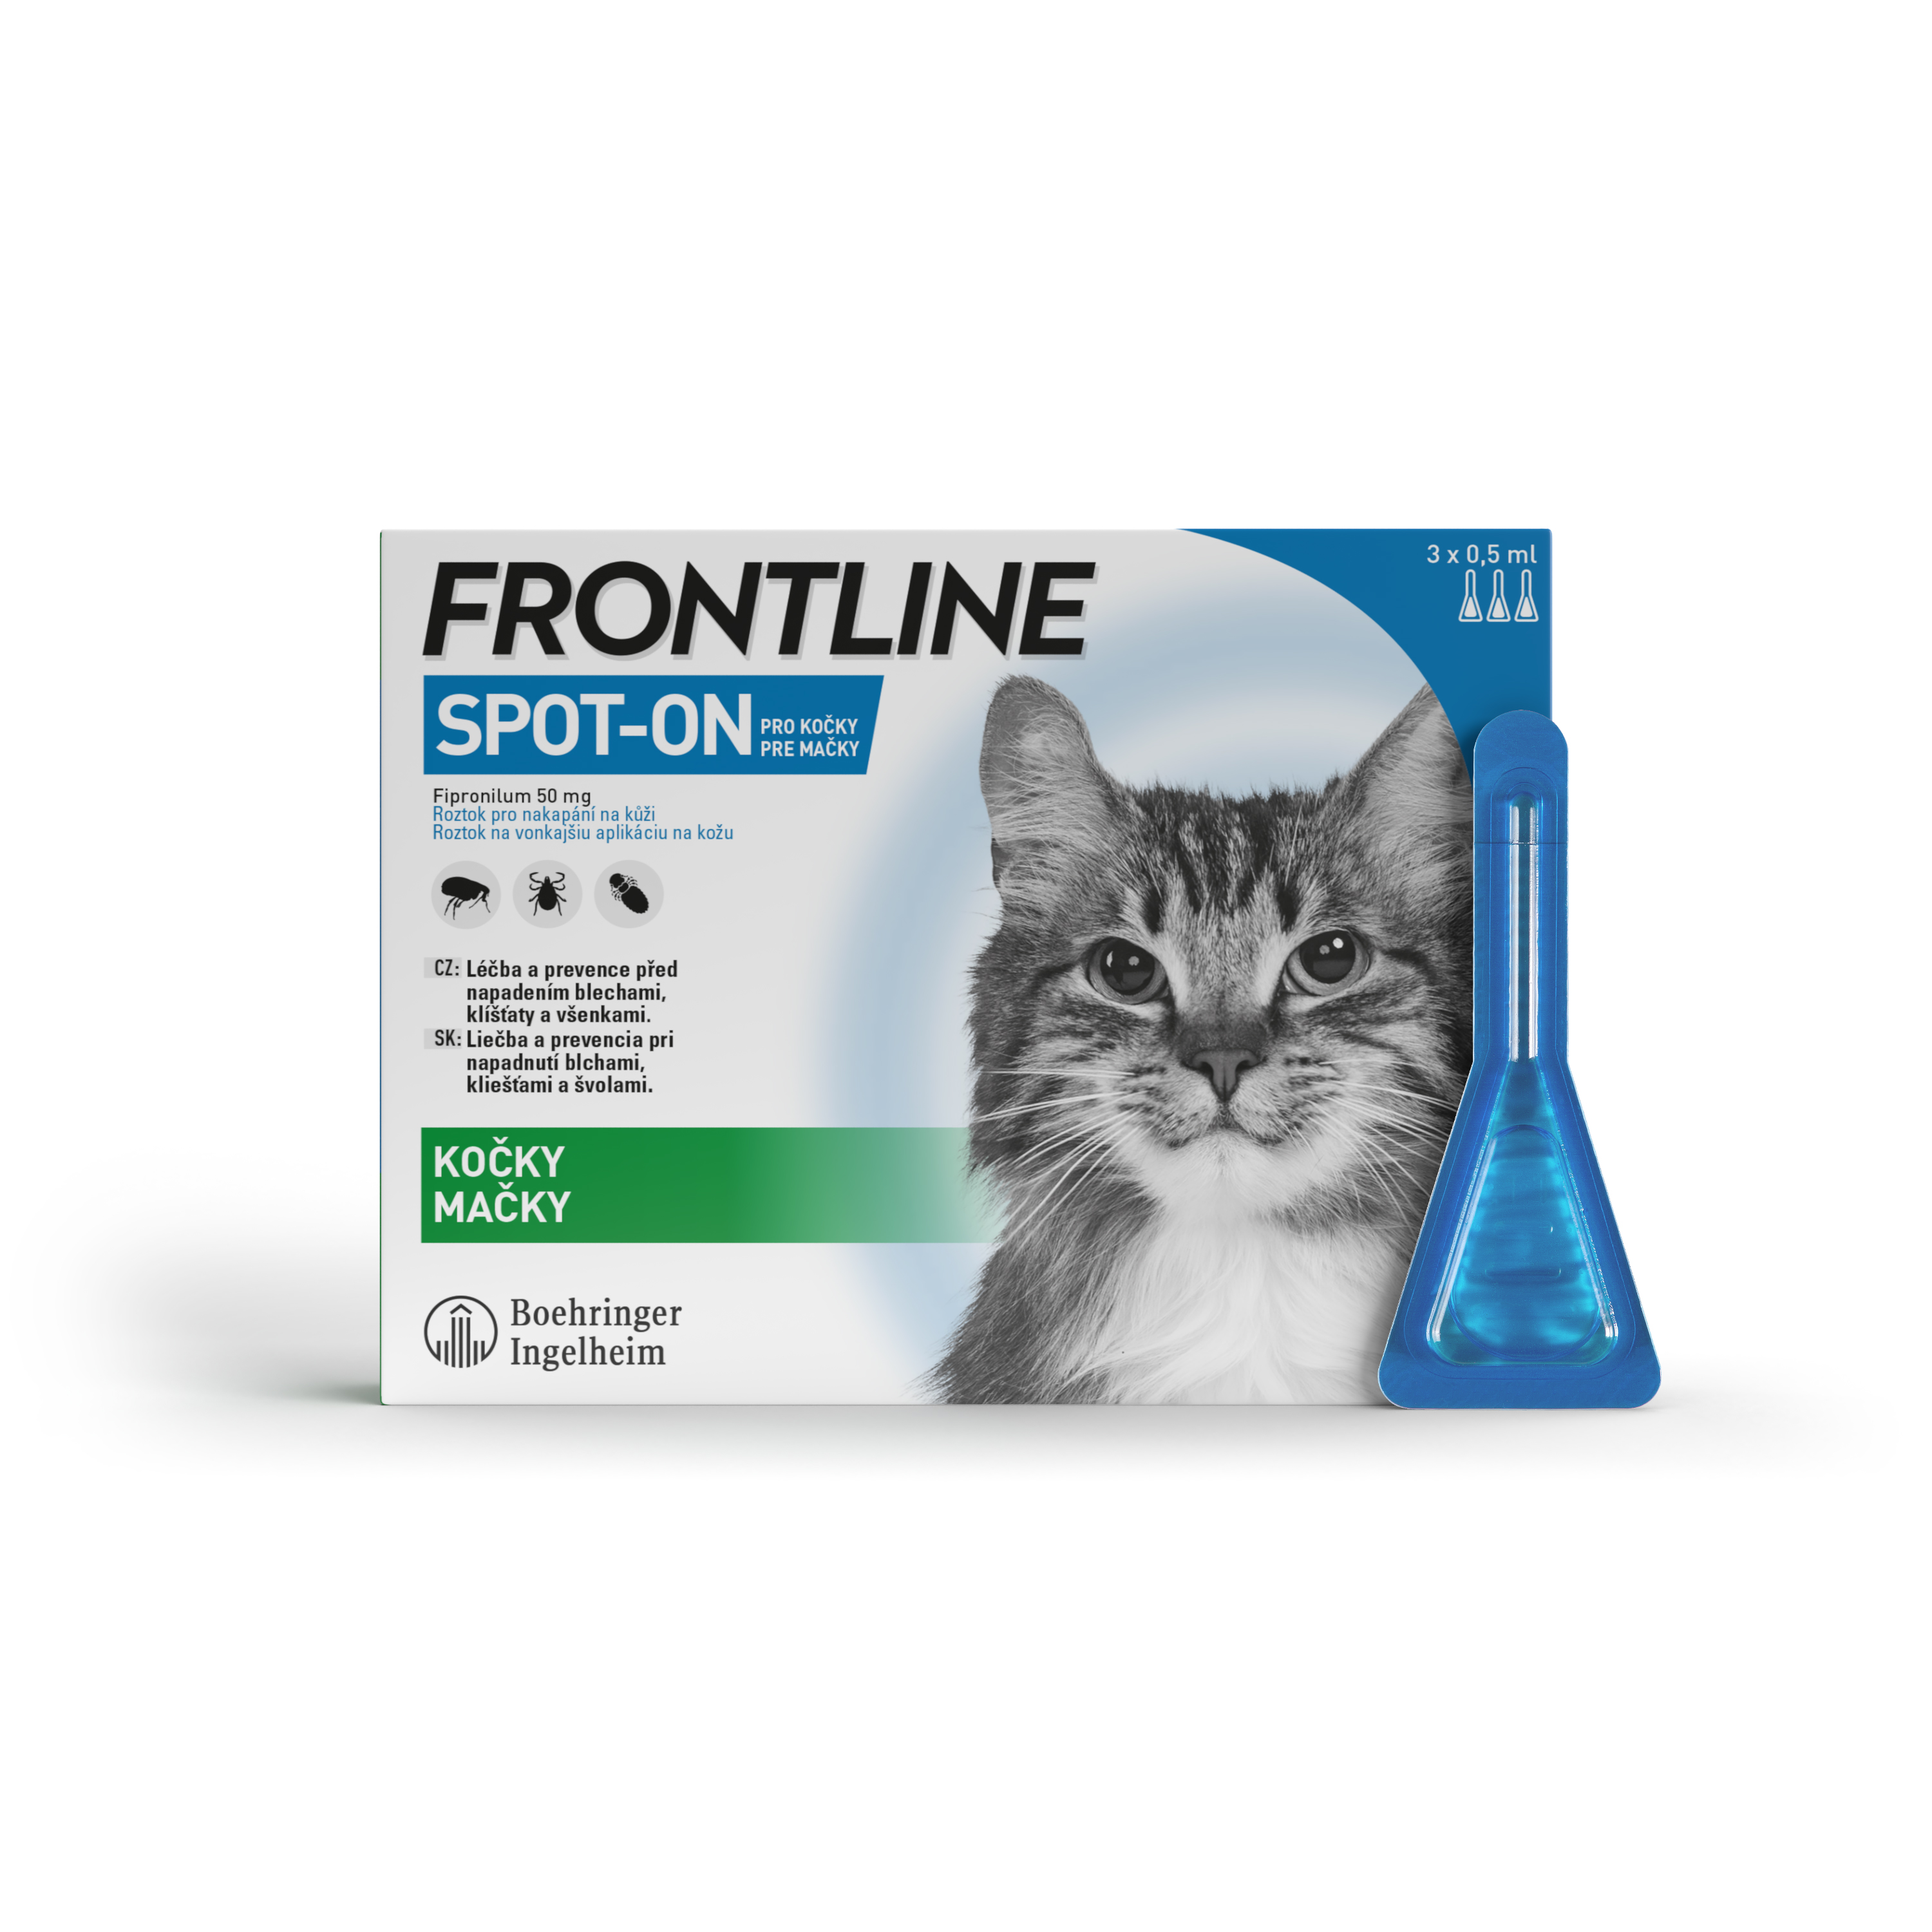 Frontline Spot-on pro kočky 3 x 0,5 ml